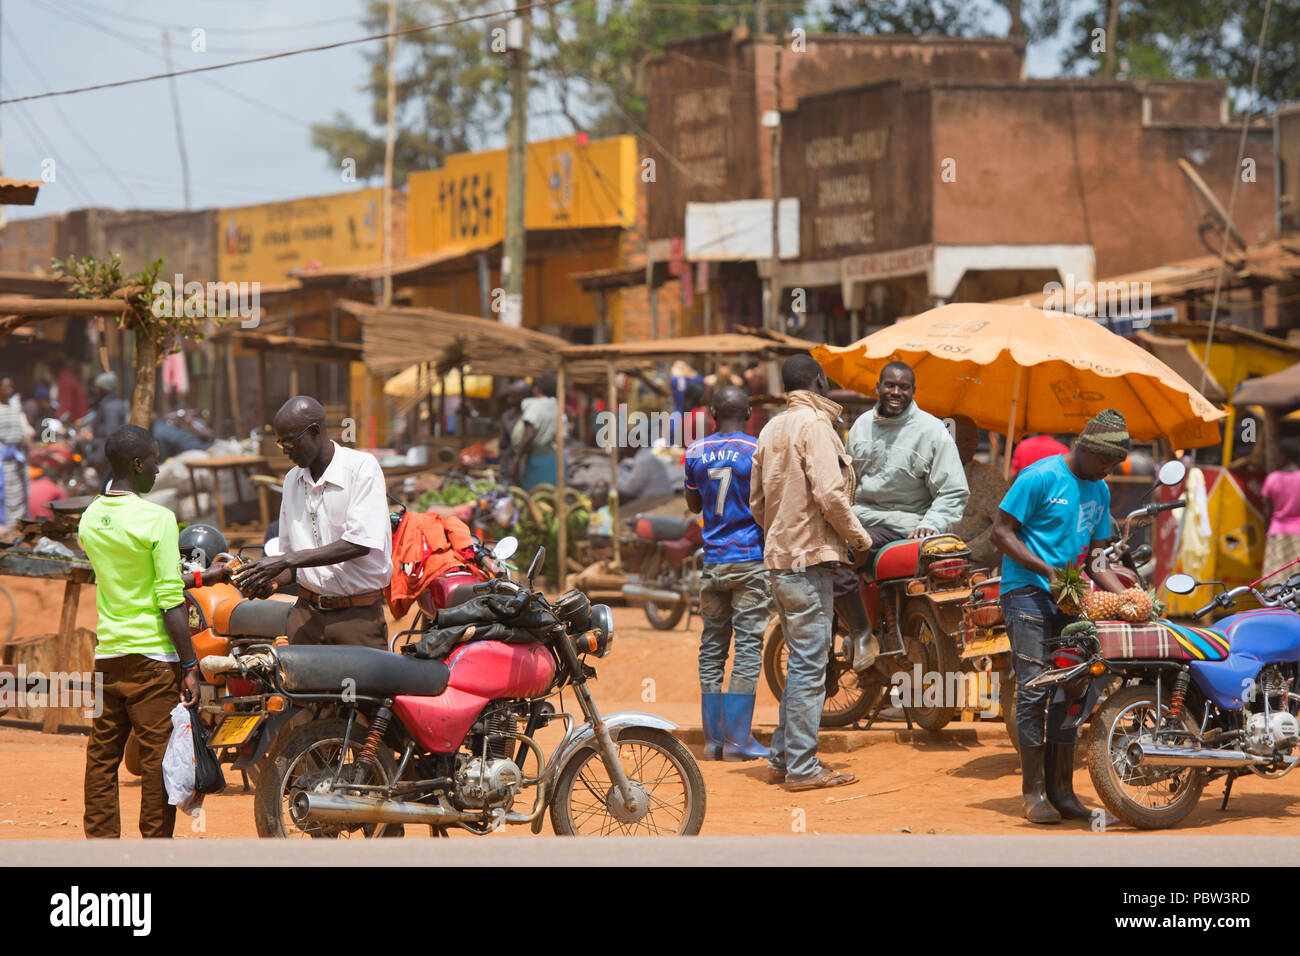 Petite ville, scène de rue, les hommes avec des motos, l'engorgement du marché occupé, des Transports, de l'Afrique de l'Est, l'Ouganda Banque D'Images